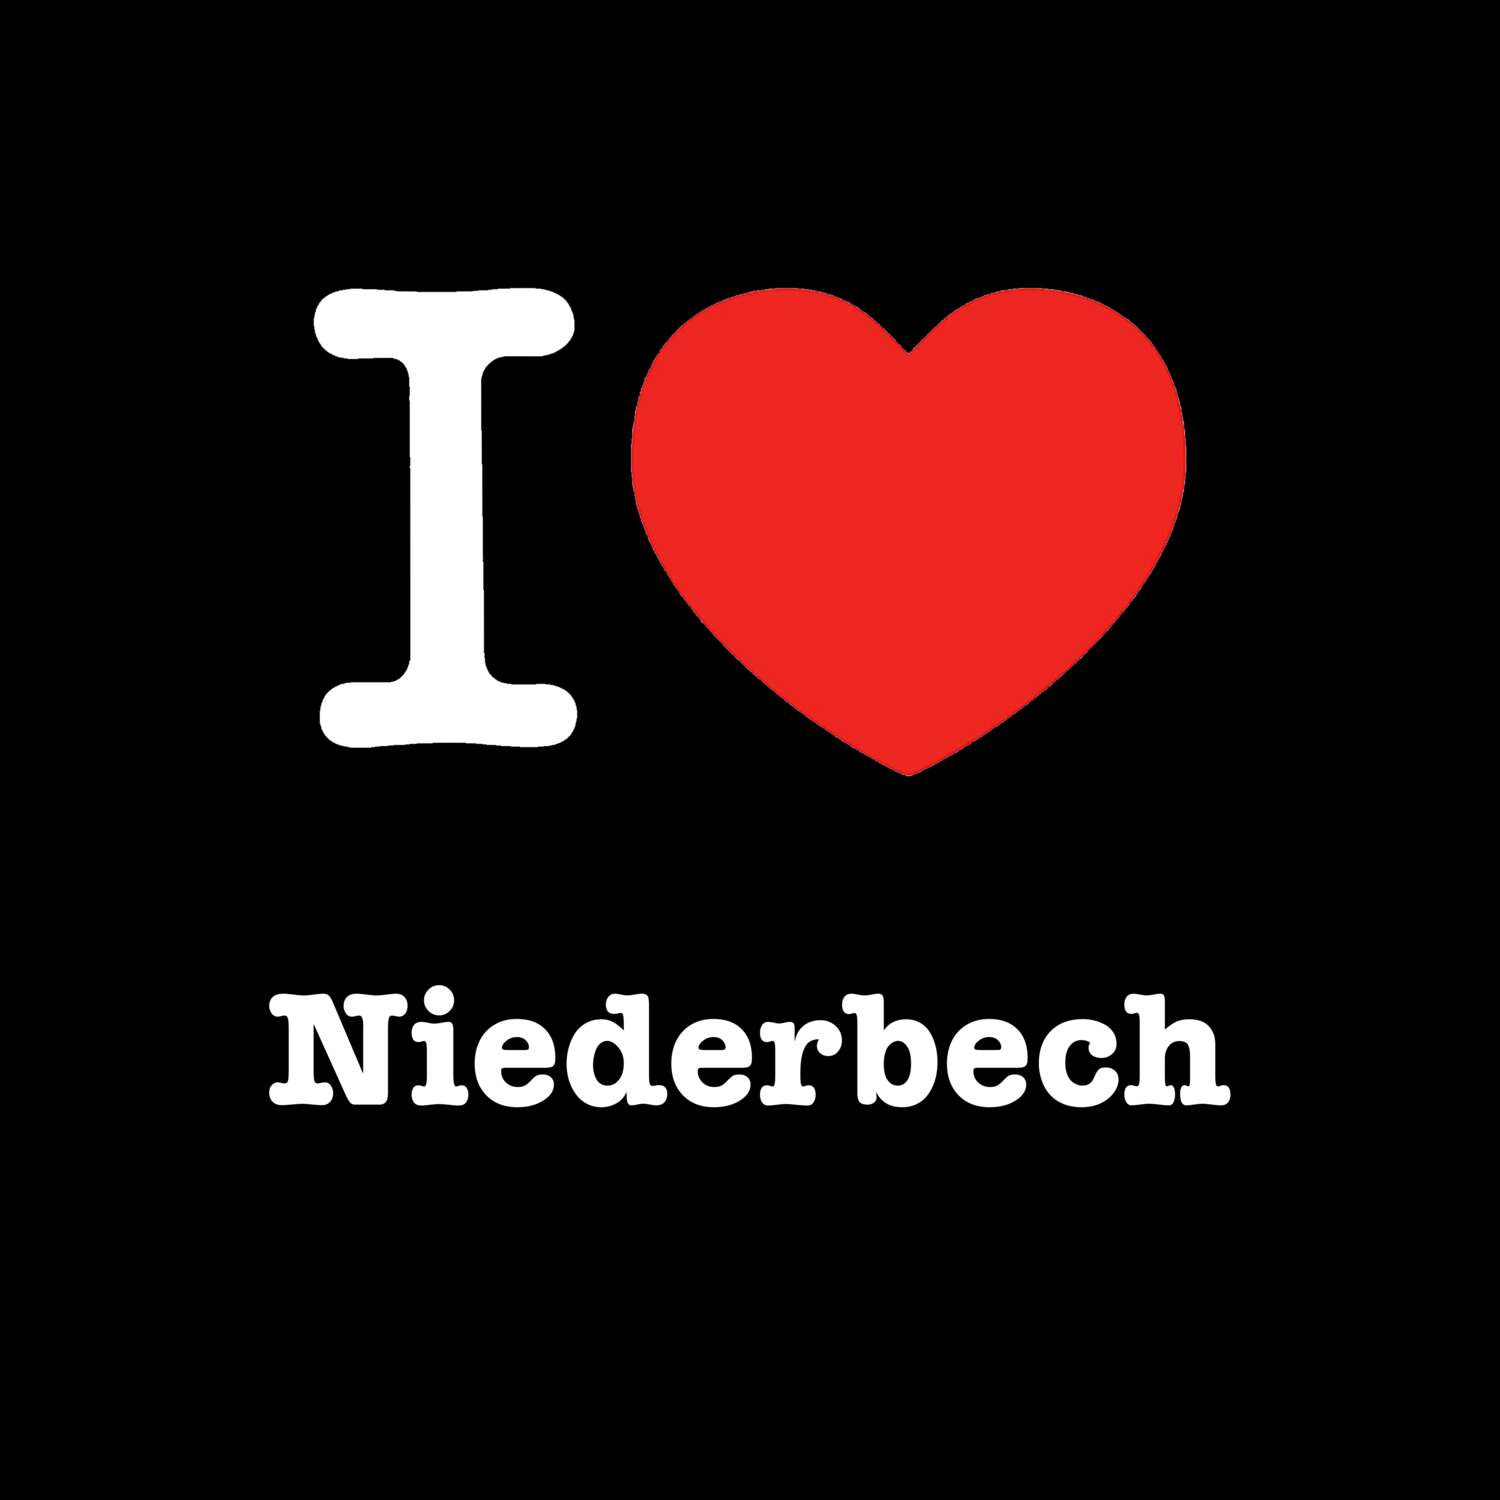 Niederbech T-Shirt »I love«